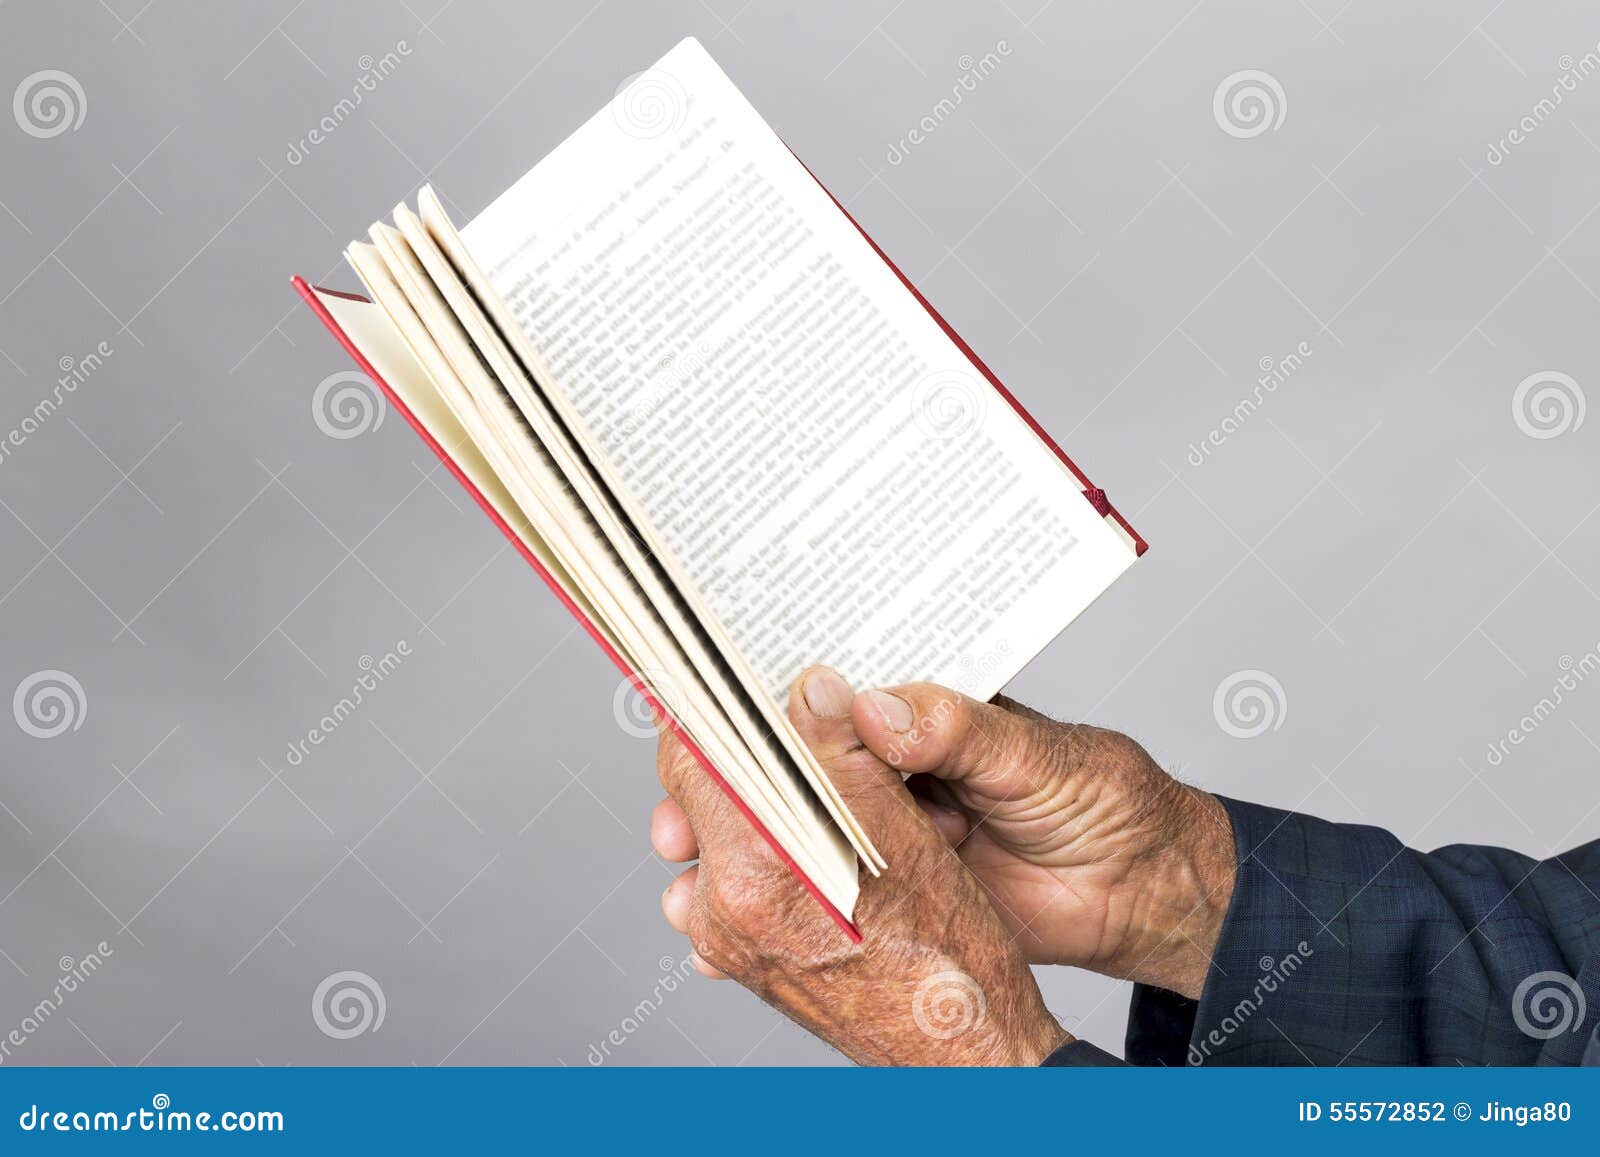 Держать открытую книгу. Держит открытую книгу. Человек держит открытую книгу. Рука держит раскрытую книгу. Рука с открытой книгой.